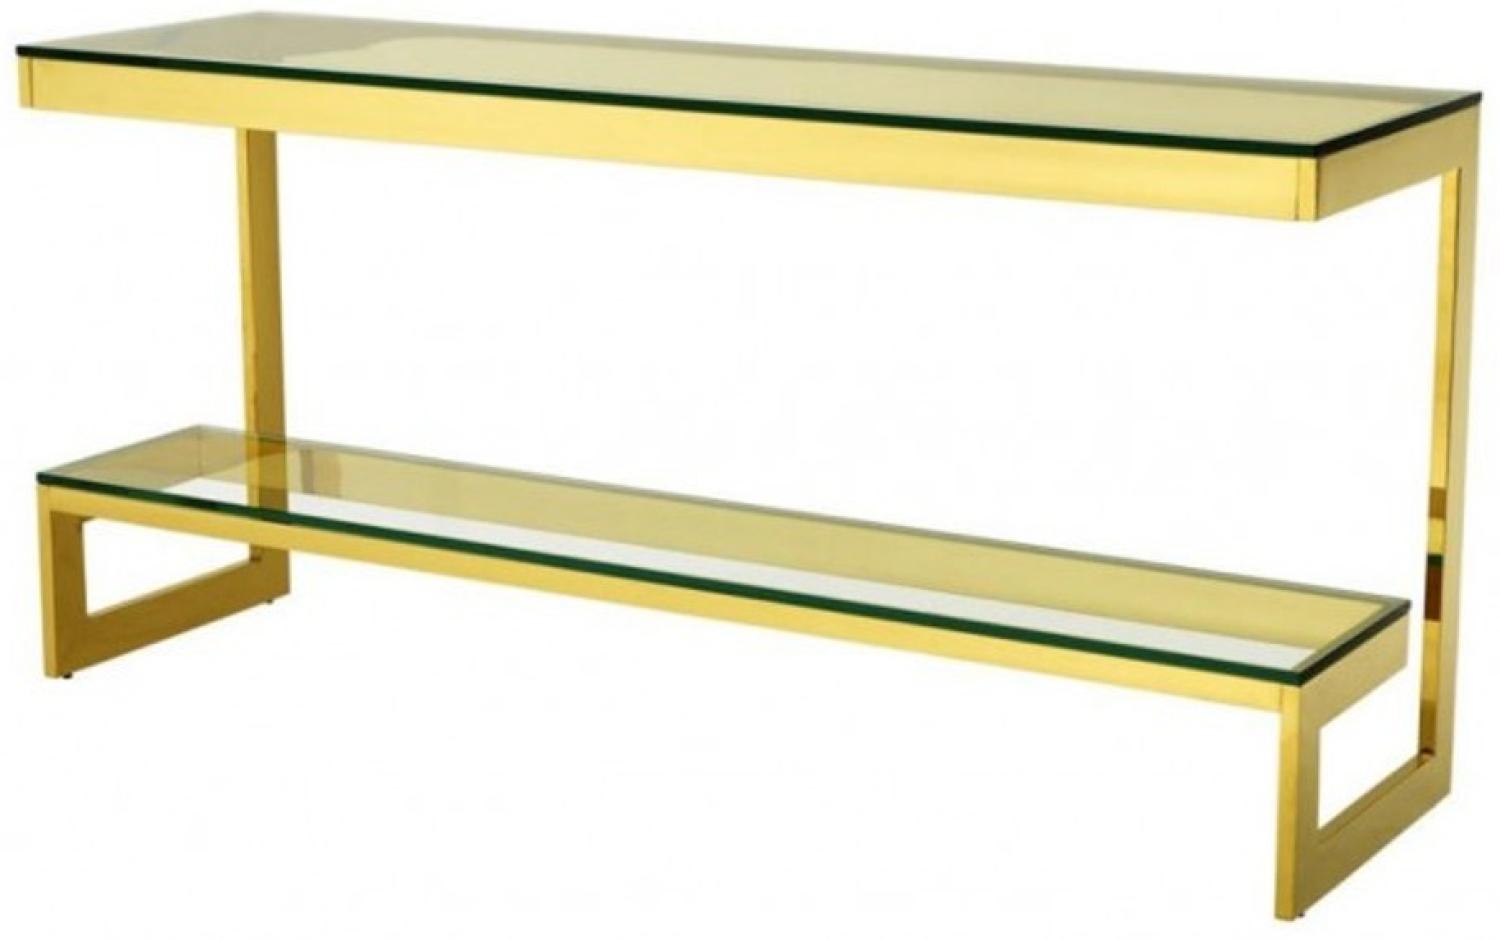 Casa Padrino Luxus Konsole Gold 160 x 45 x H. 76 cm - Konsolen Tisch Möbel Bild 1